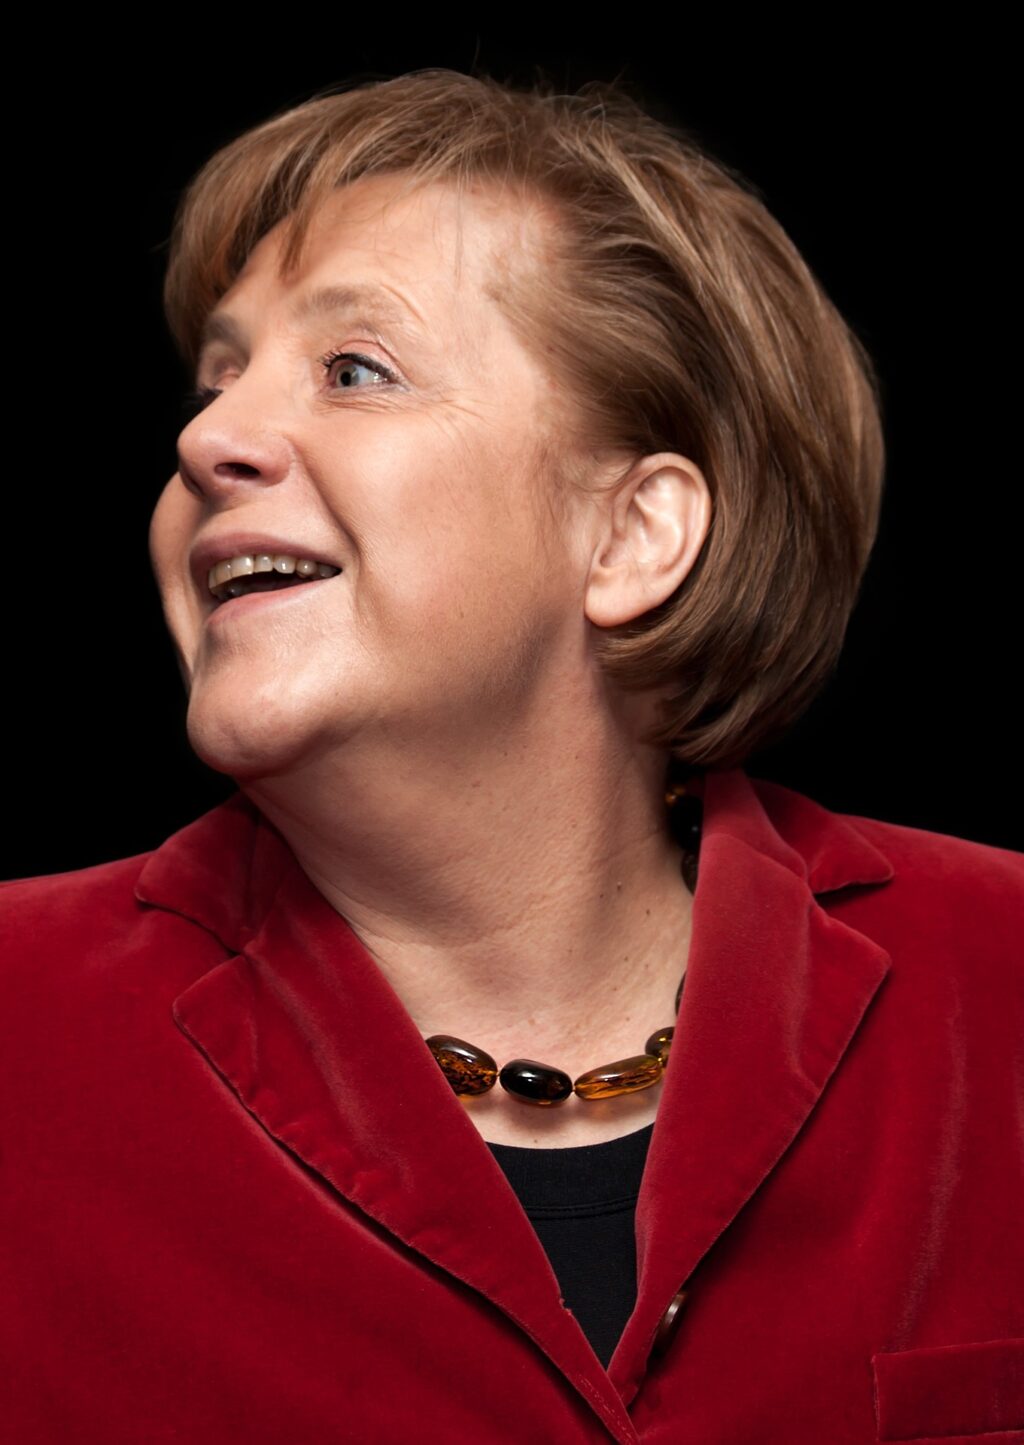 Dinamarca ayudó a Washington para espiar a Merkel